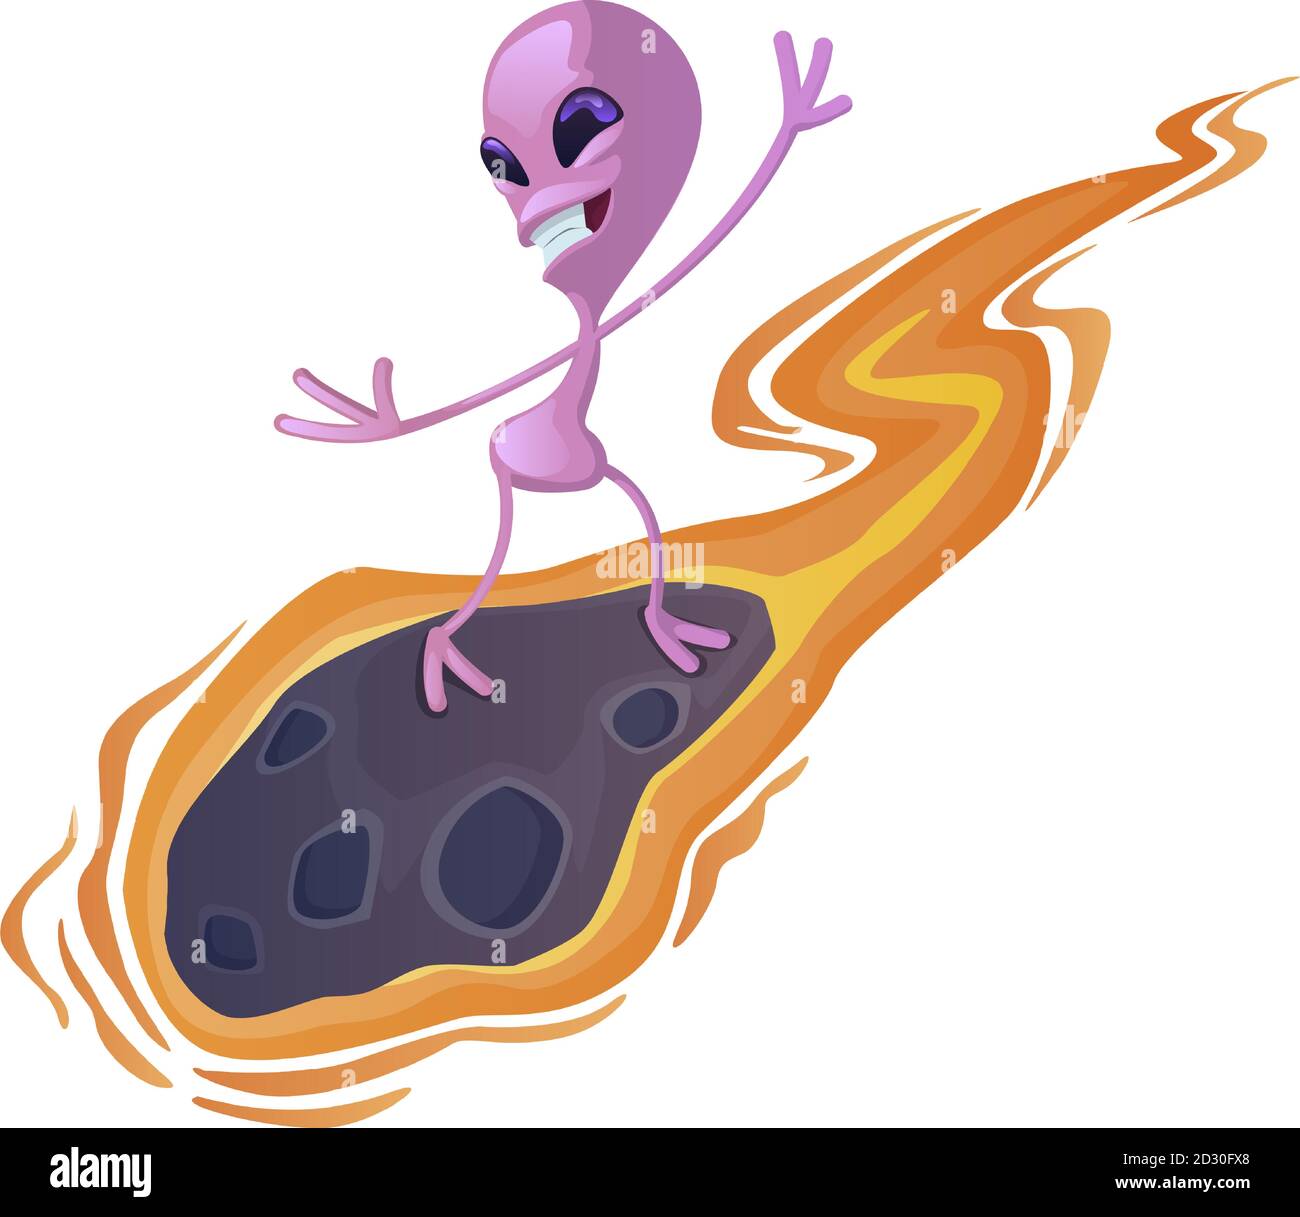 Alieno su meteorite piatto cartoon illustrazione vettoriale. Divertente extraterrestre, volare marziano. Modello di caratteri 2d pronto all'uso per uso commerciale Illustrazione Vettoriale